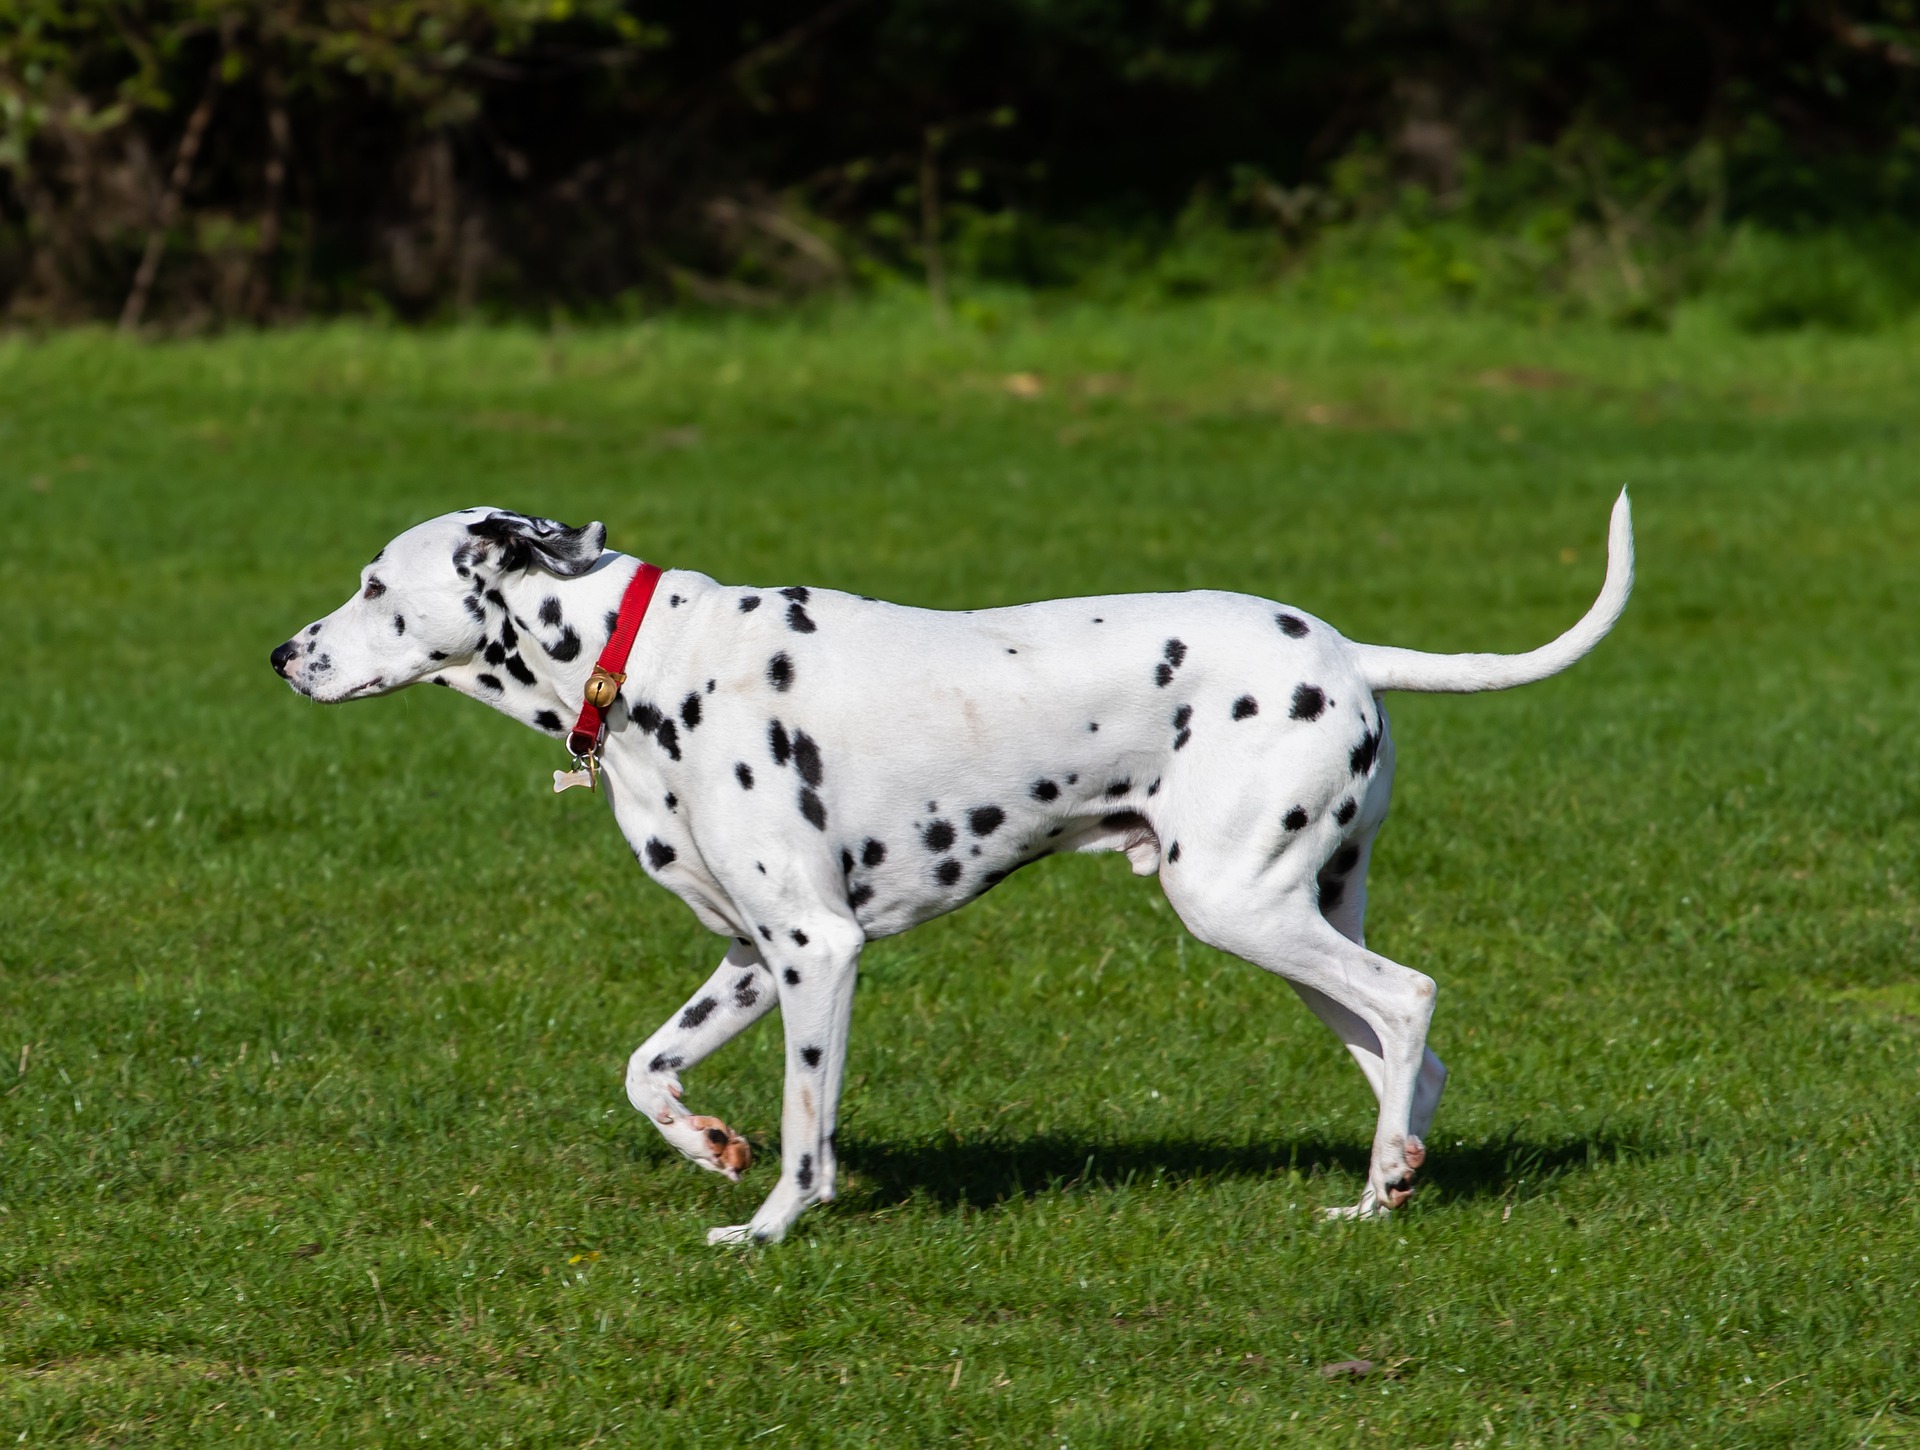 Dalmatyńczyki są psami średniej wielkości. Co ciekawe zdarzają się również dalmatyńczyki o brązowej sierści, jako podstawie.